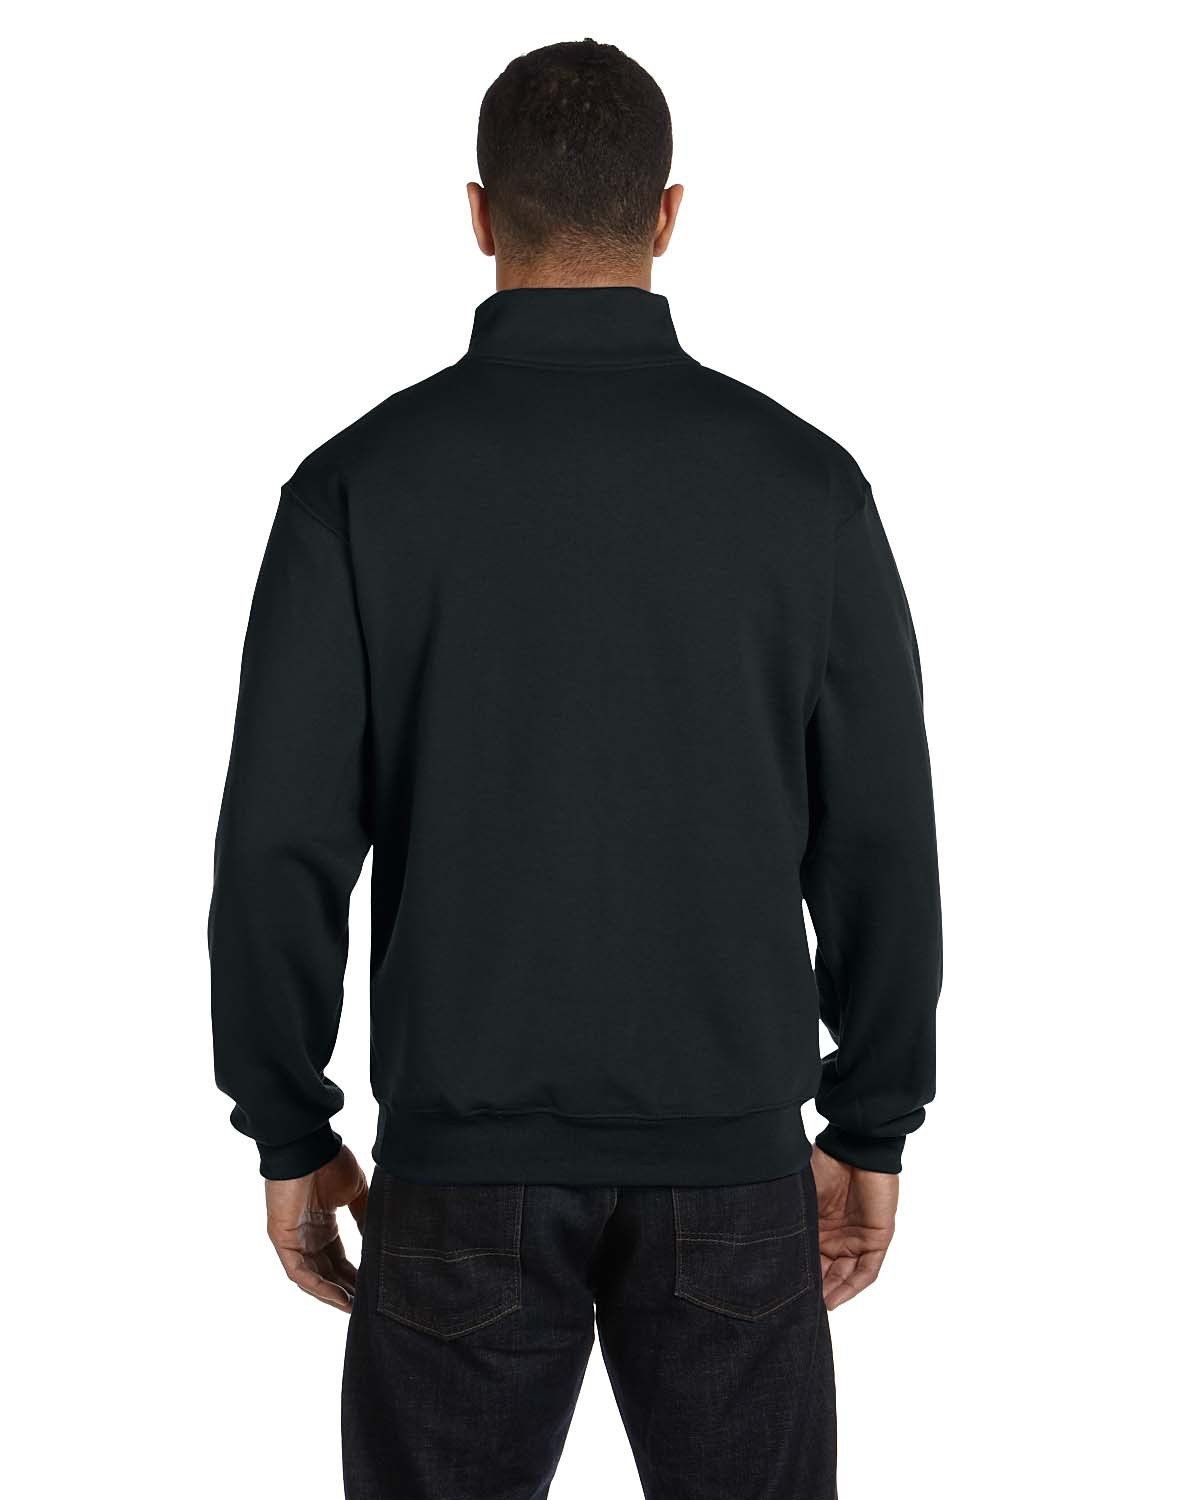 'Jerzees 995M Adult NuBlend Quarter Zip Cadet Collar Sweatshirt'